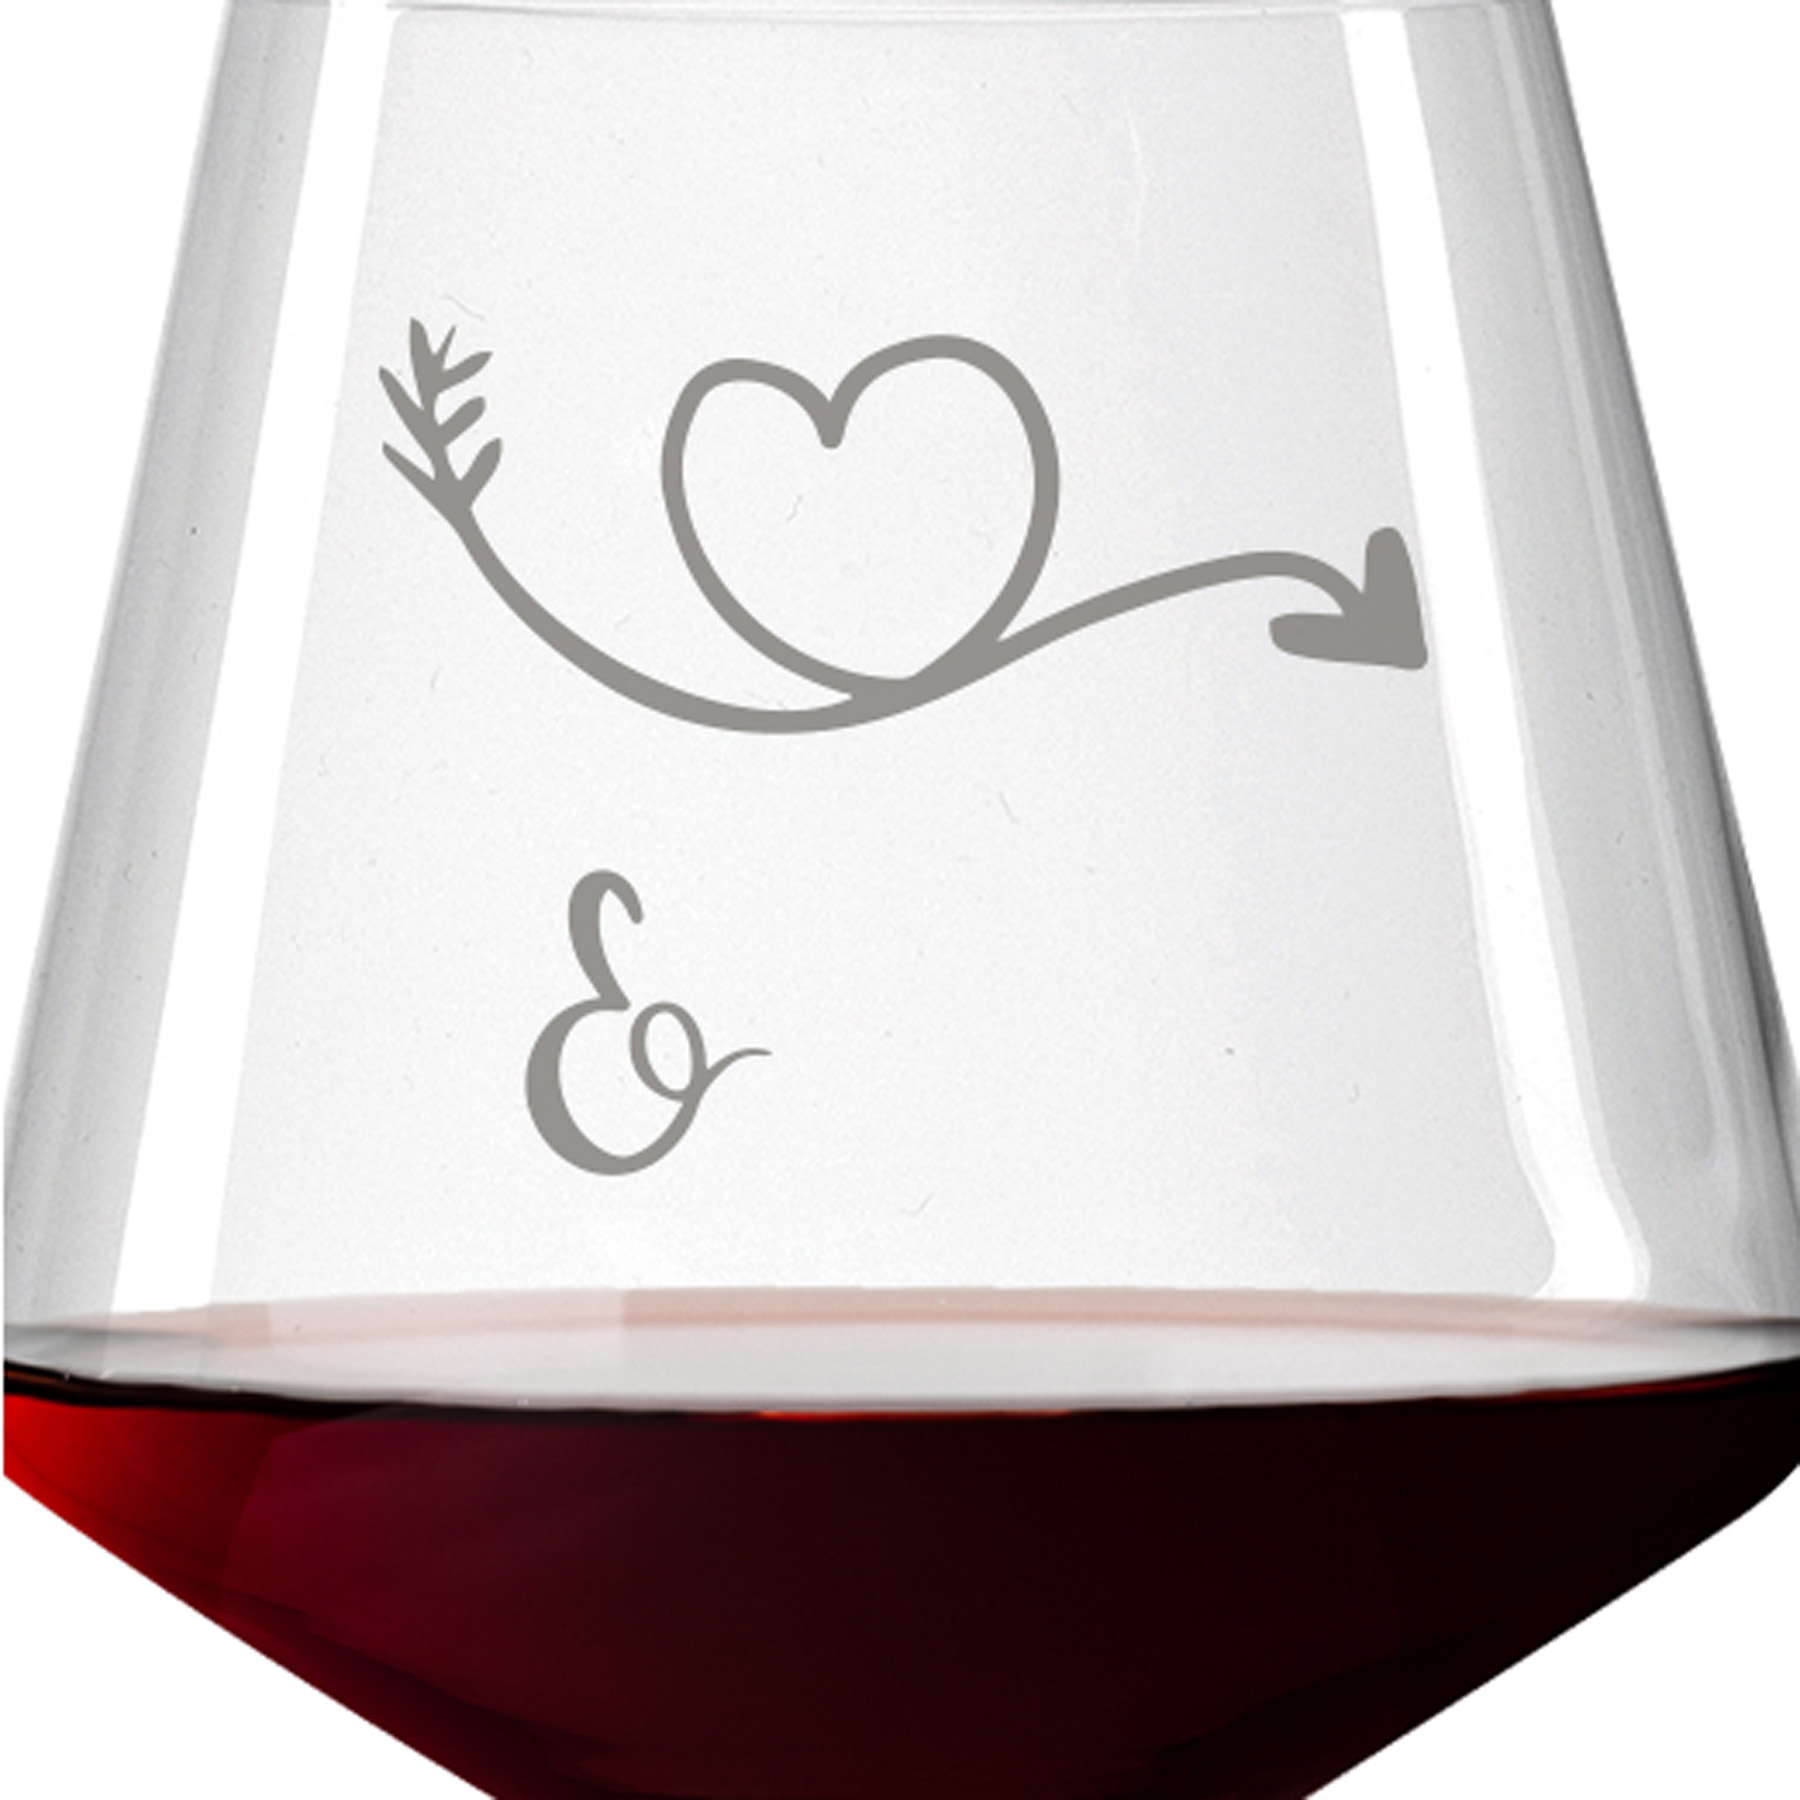 Leonardo Burgunderglas Rotweinglas PUCCINI 730ml mit Namen oder Wunschtext graviert (Herzpfeil)